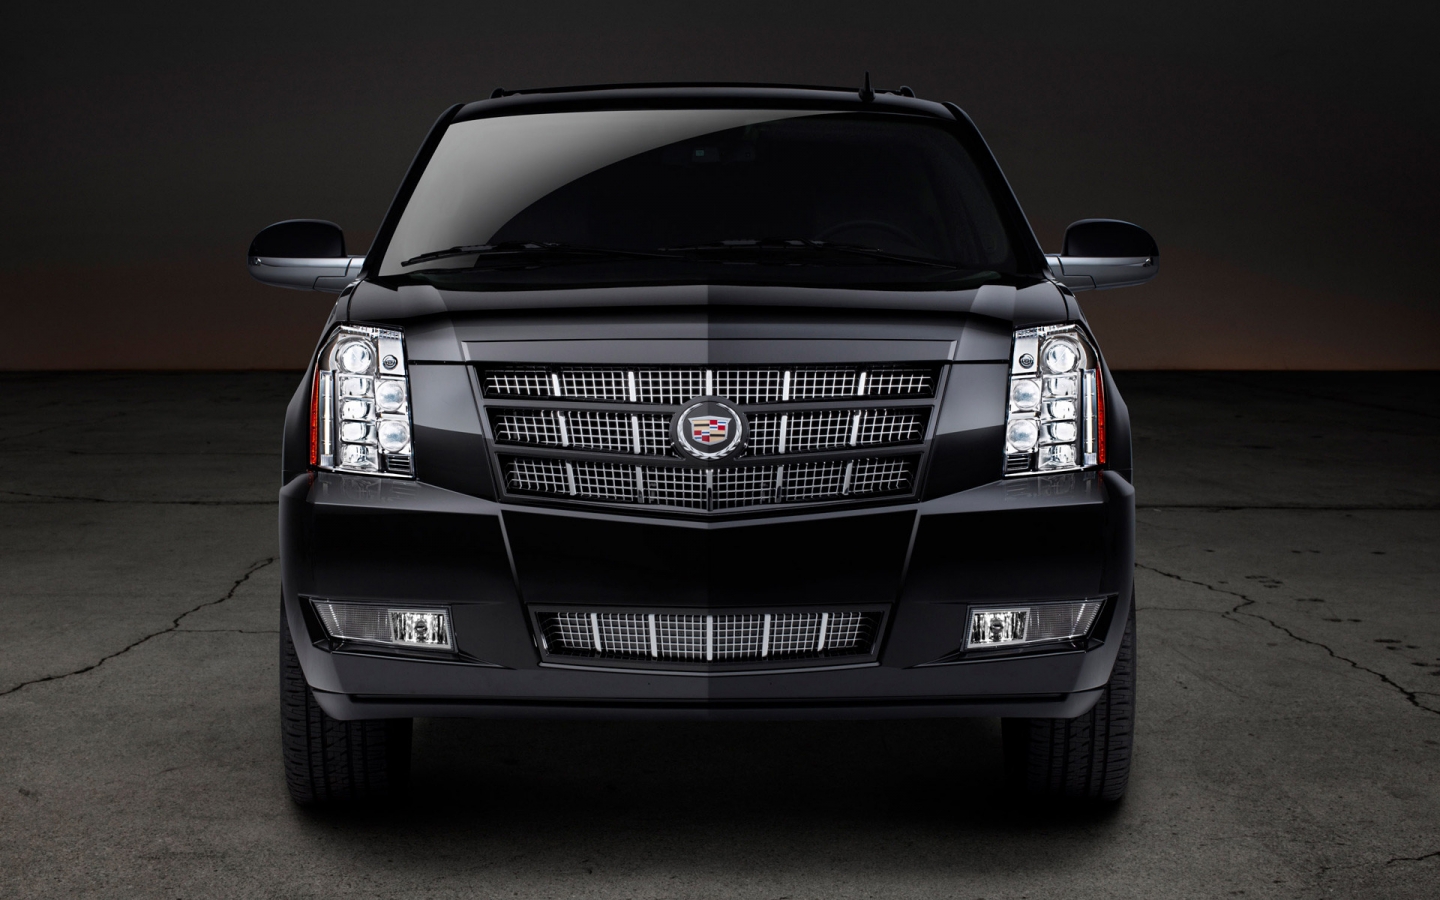 2012 Cadillac Escalade Premium for 1440 x 900 widescreen resolution